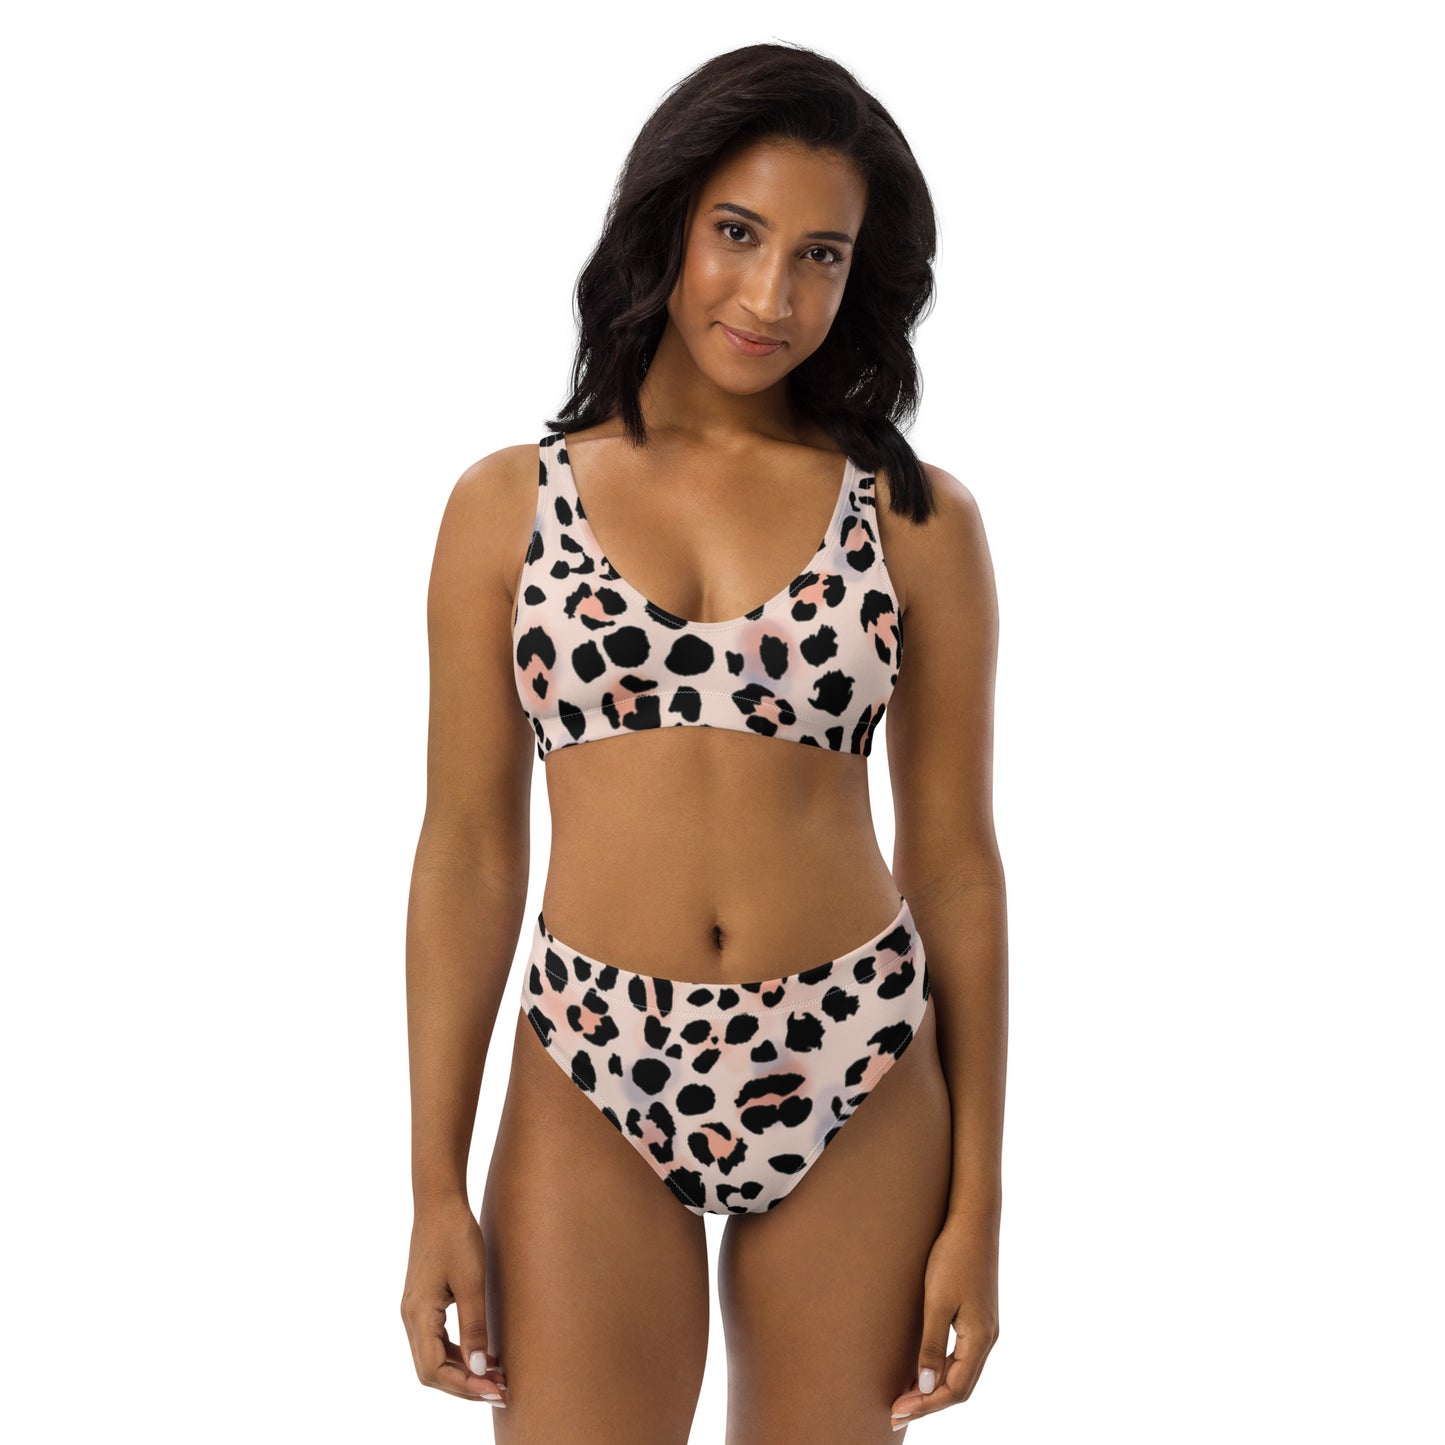 Cheetah high-waisted bikini